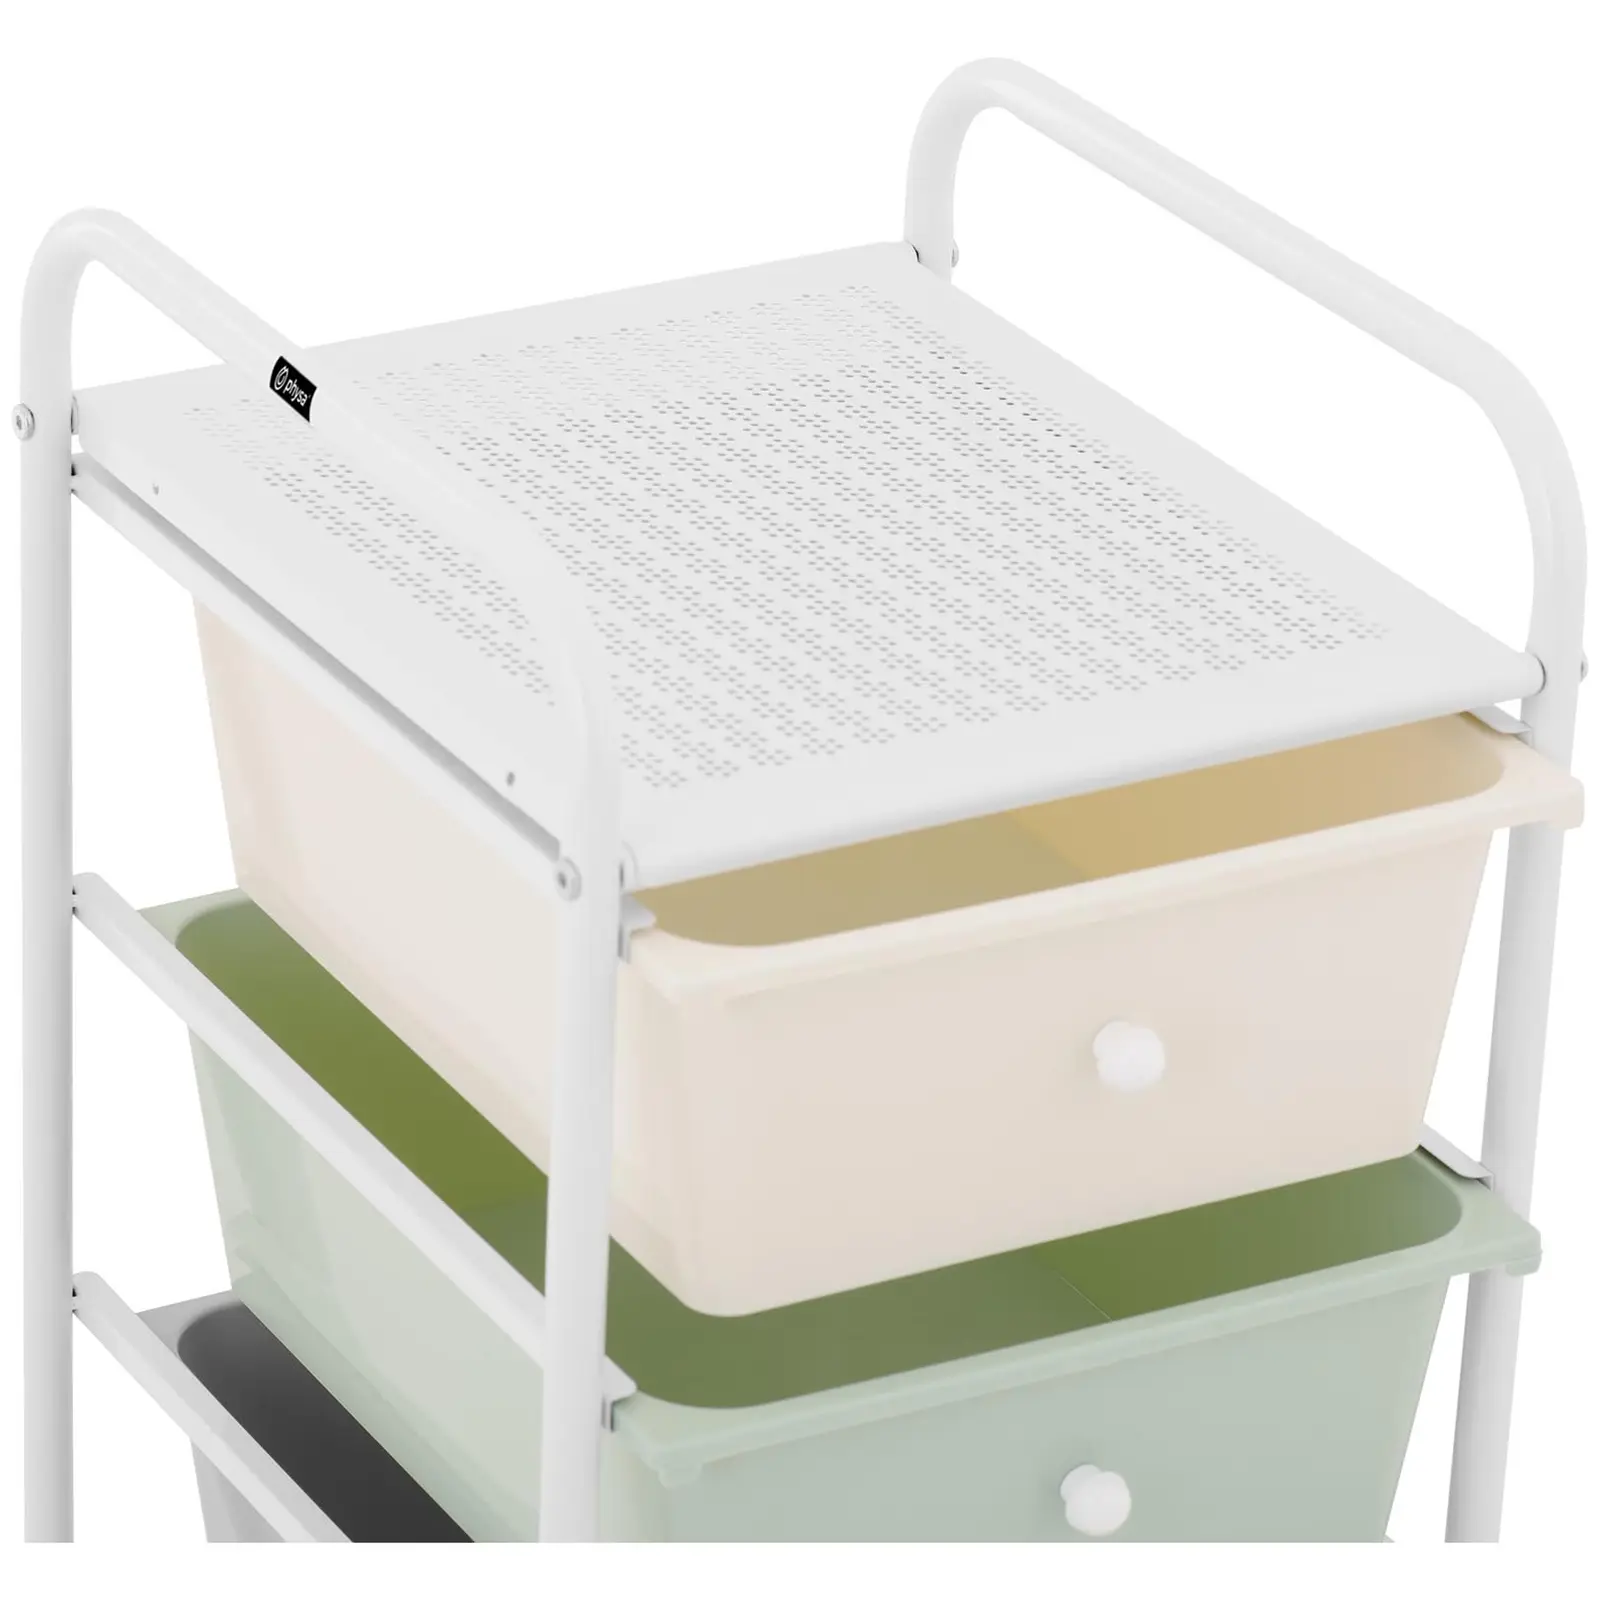 Trillebord for salong - 4 skuffer - grønn/grå/rosa/beige